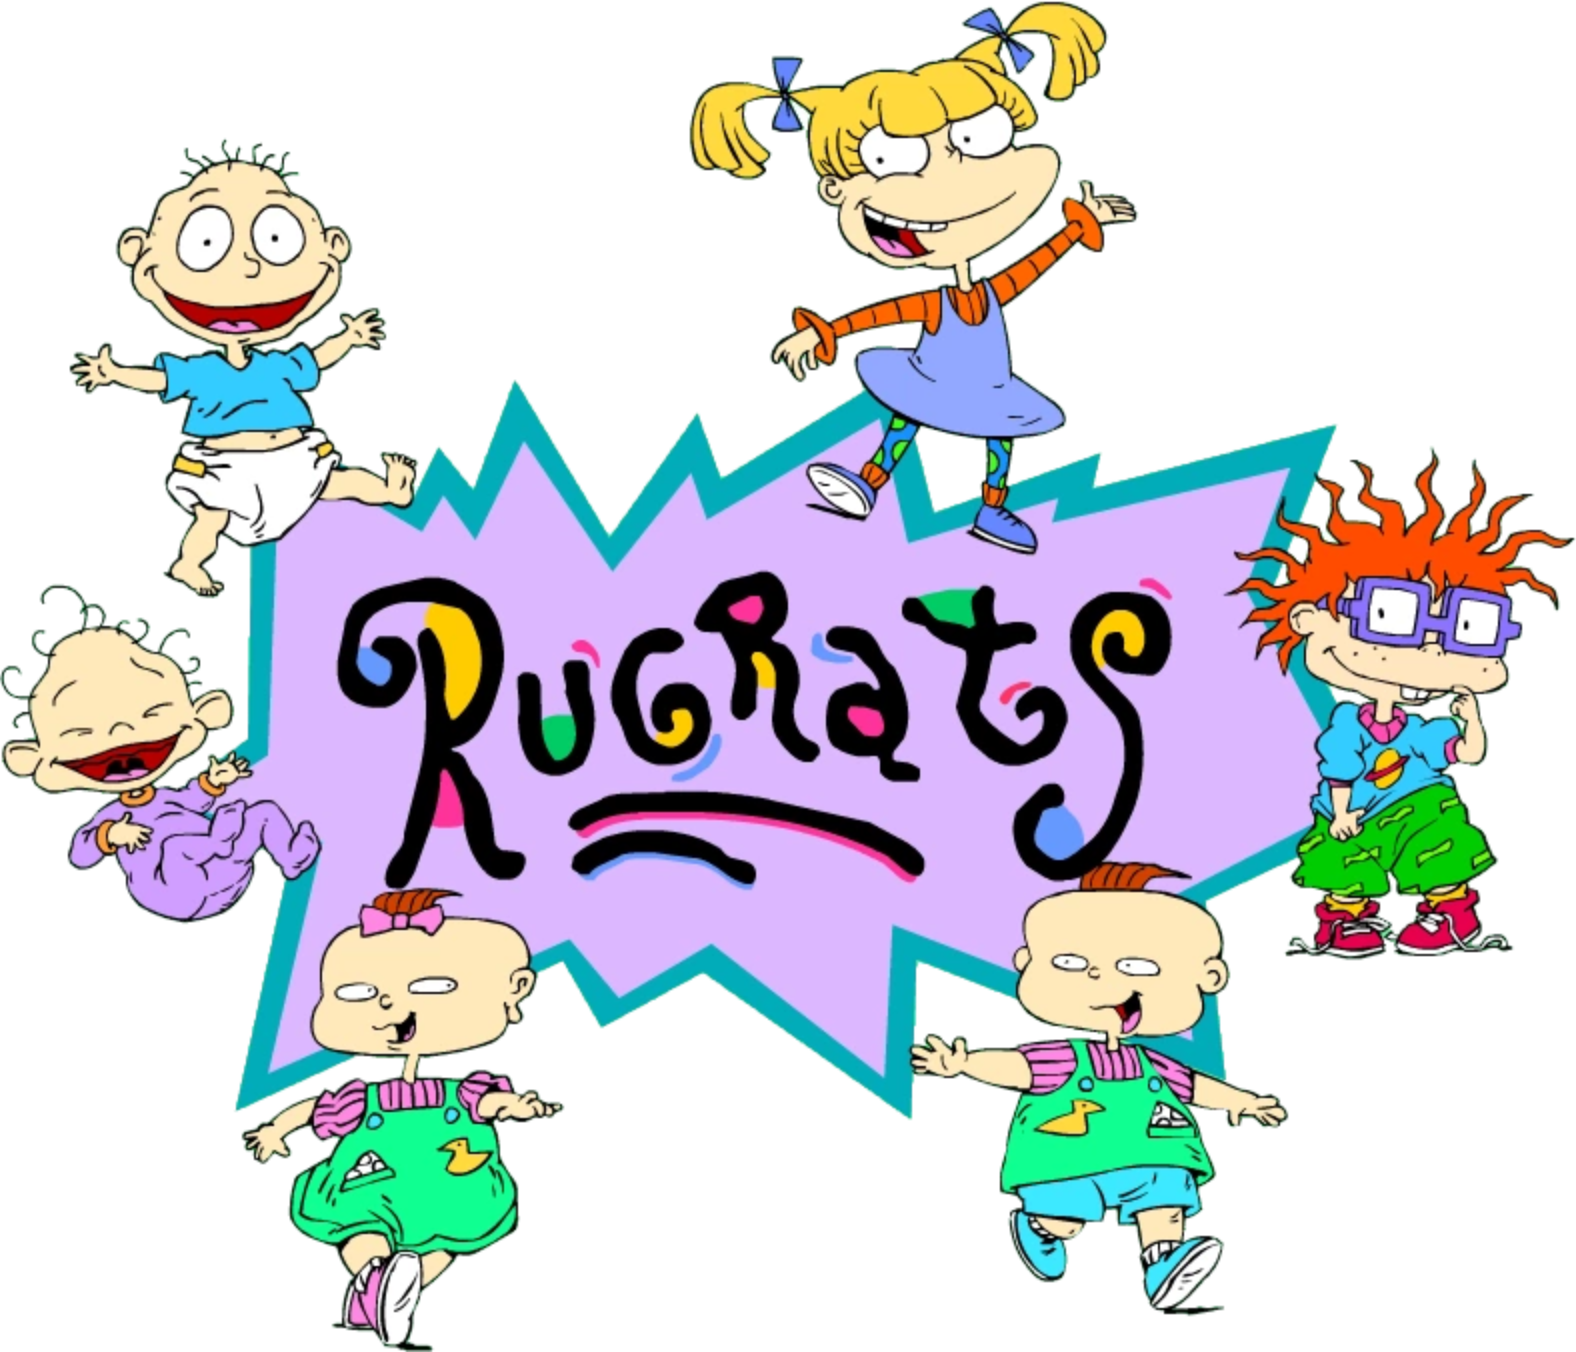 Rugrats Volume 2 (6 DVDs Box Set)